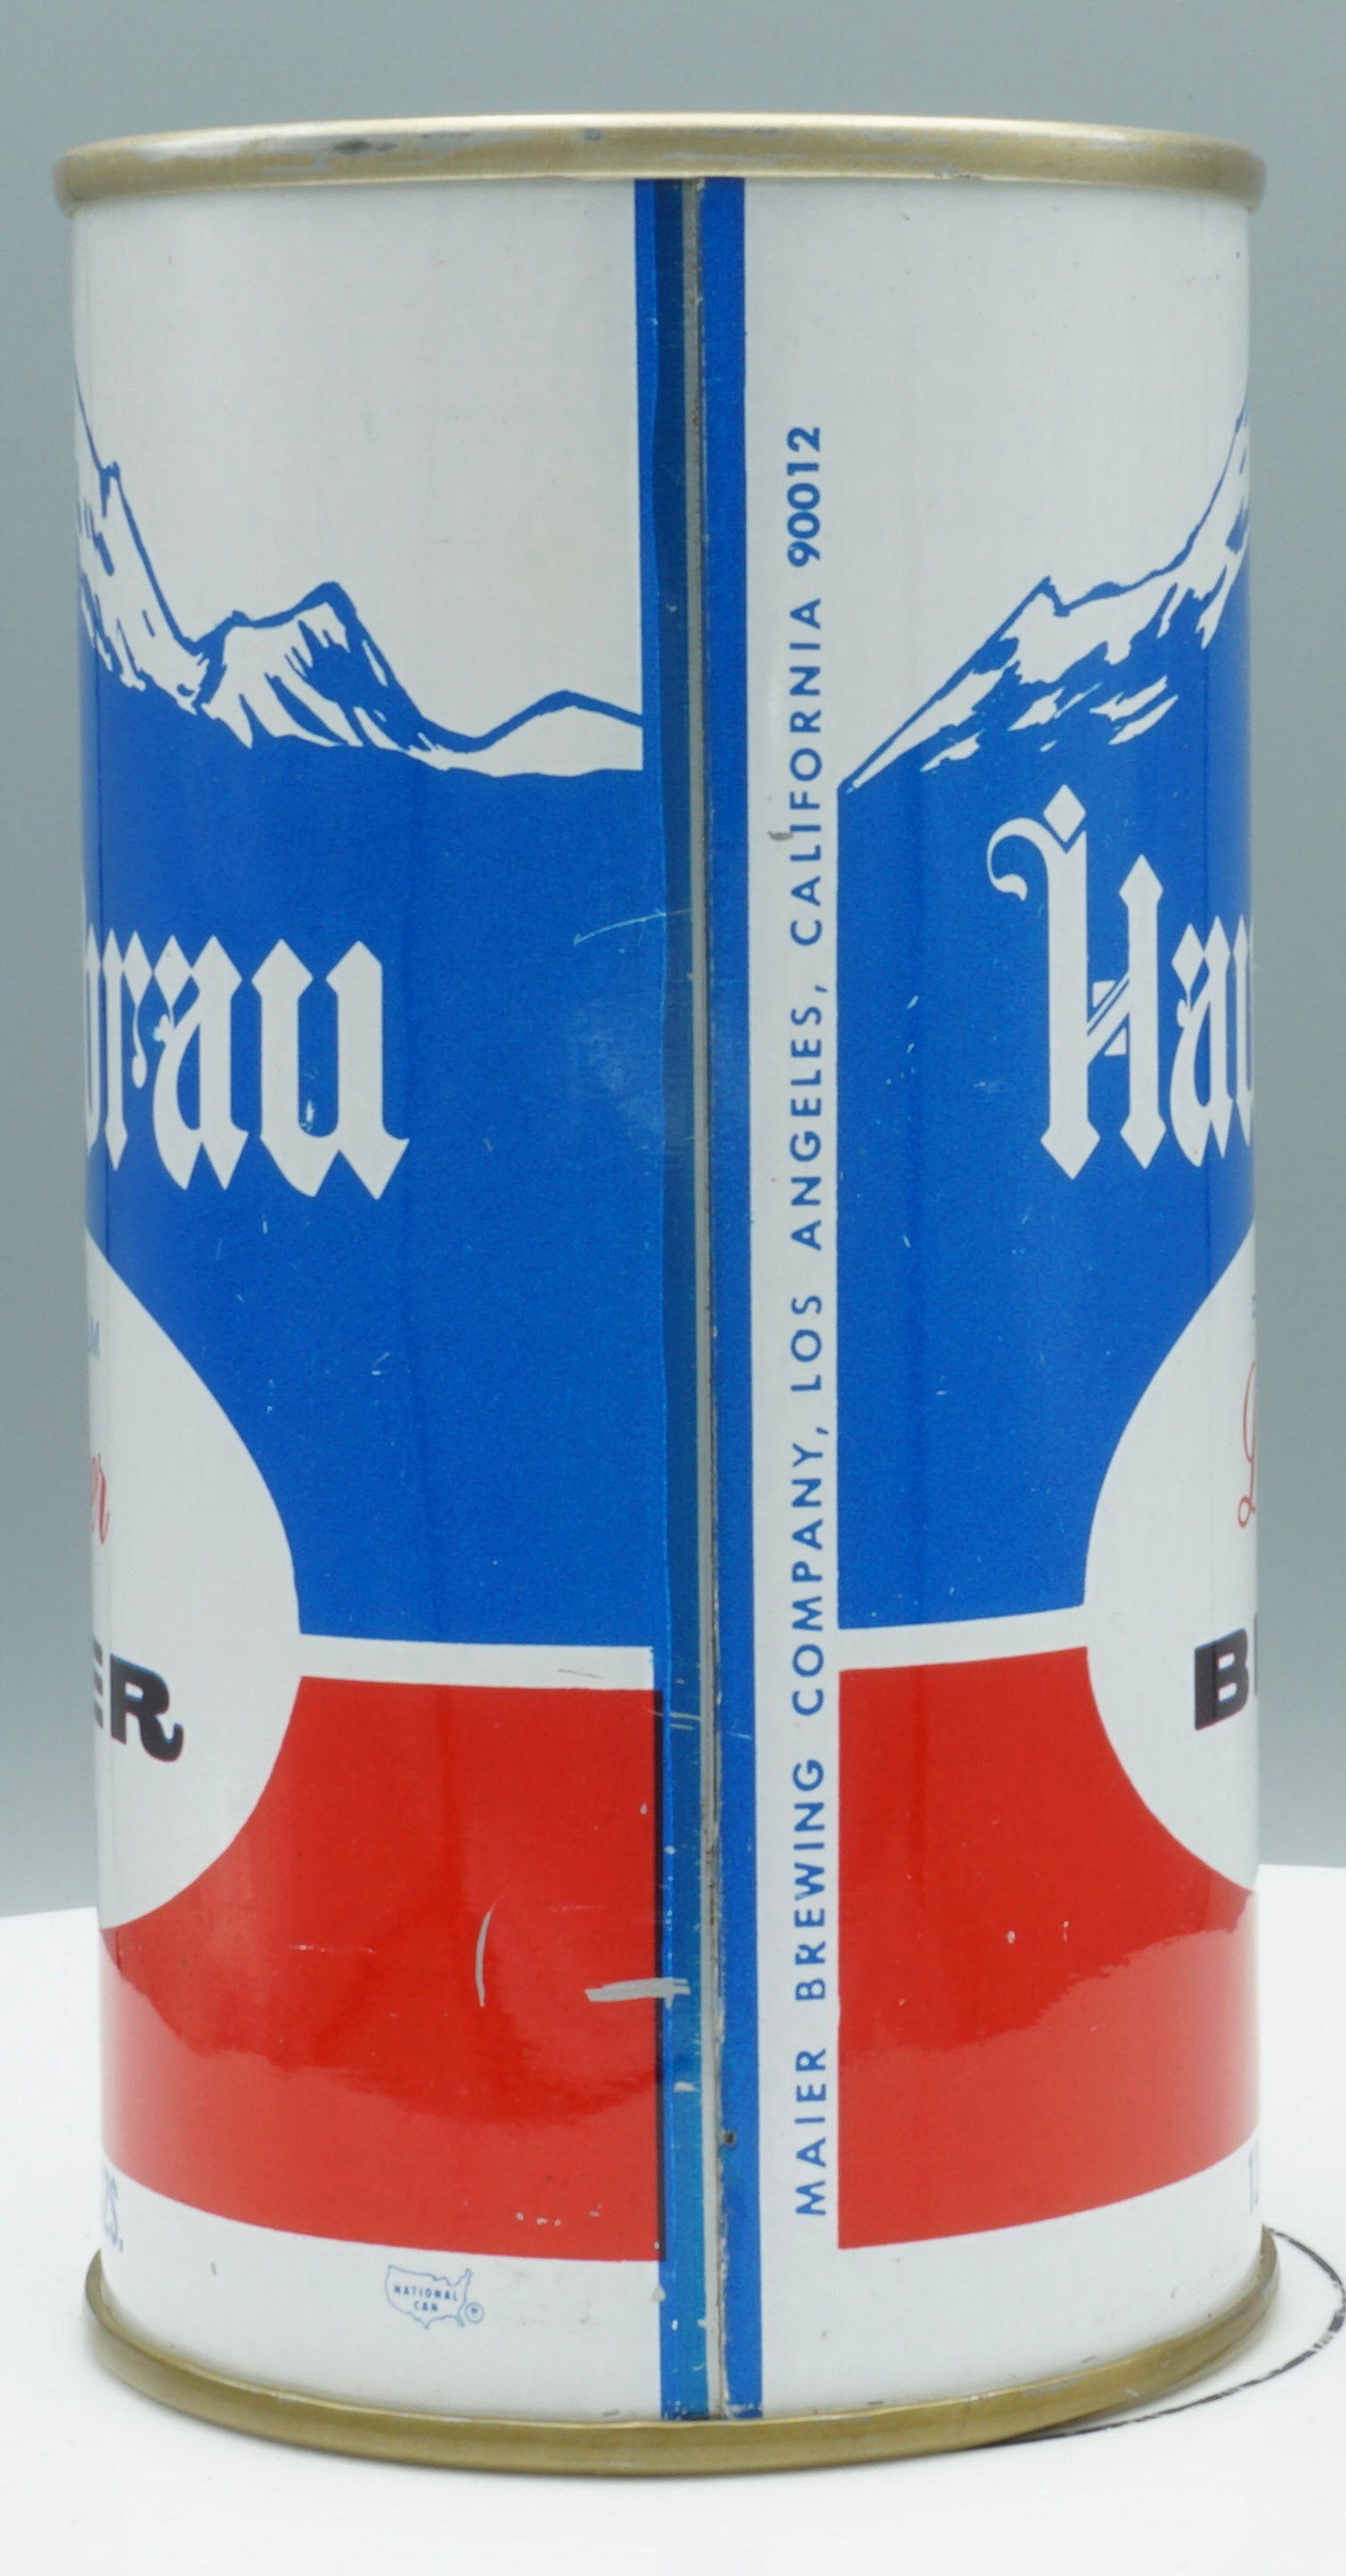 Hausbrau Premium Lager Beer, USBC II 74-21, Grade 1